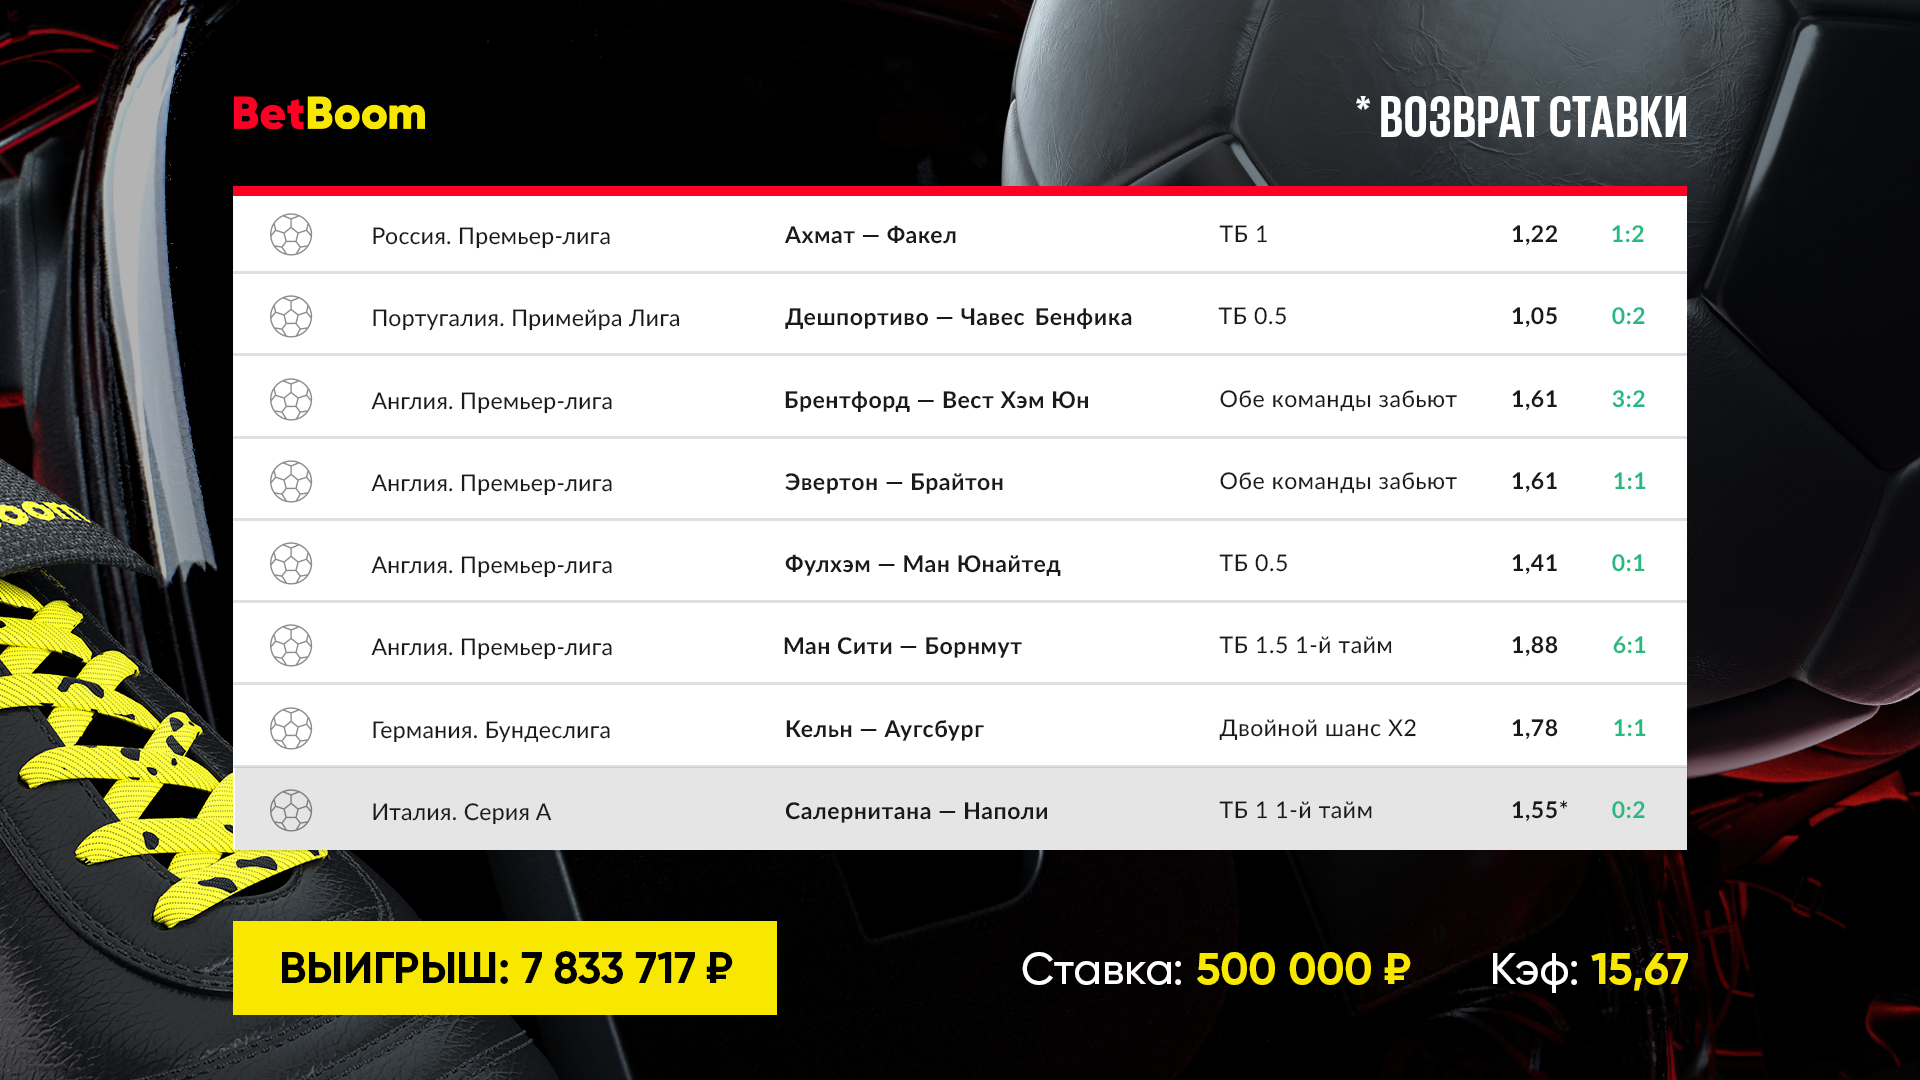 Два футбольных экспресса принесли клиенту BetBoom свыше 13 000 000 рублей  выигрыша